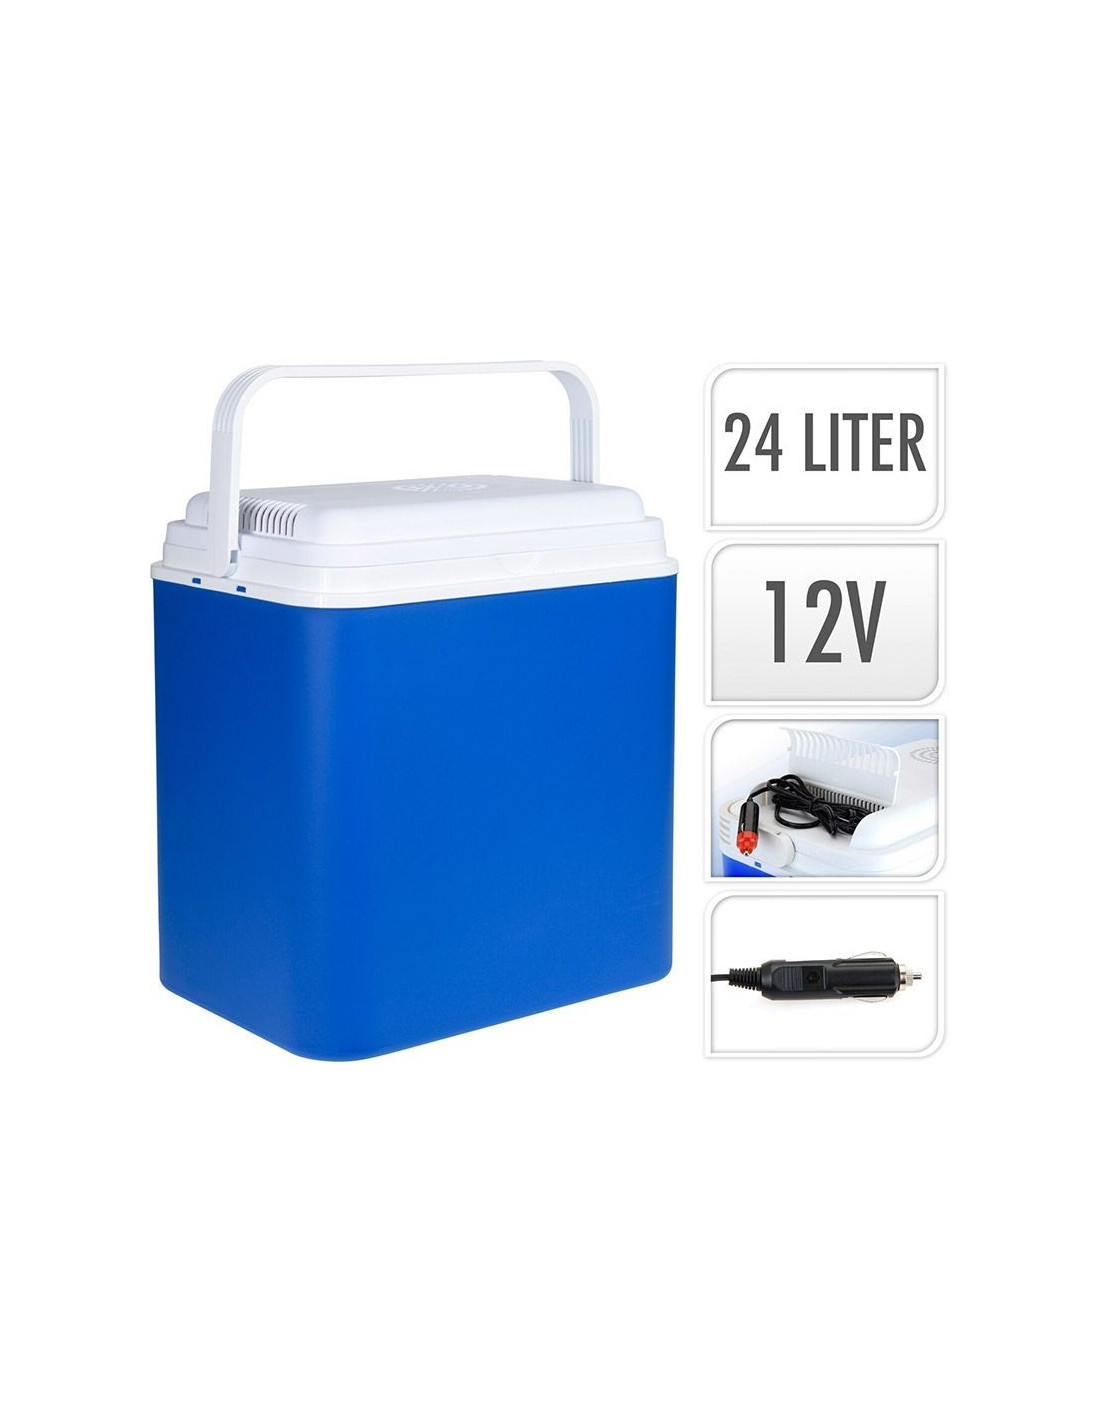 - 12V - 24 liter - Blauw